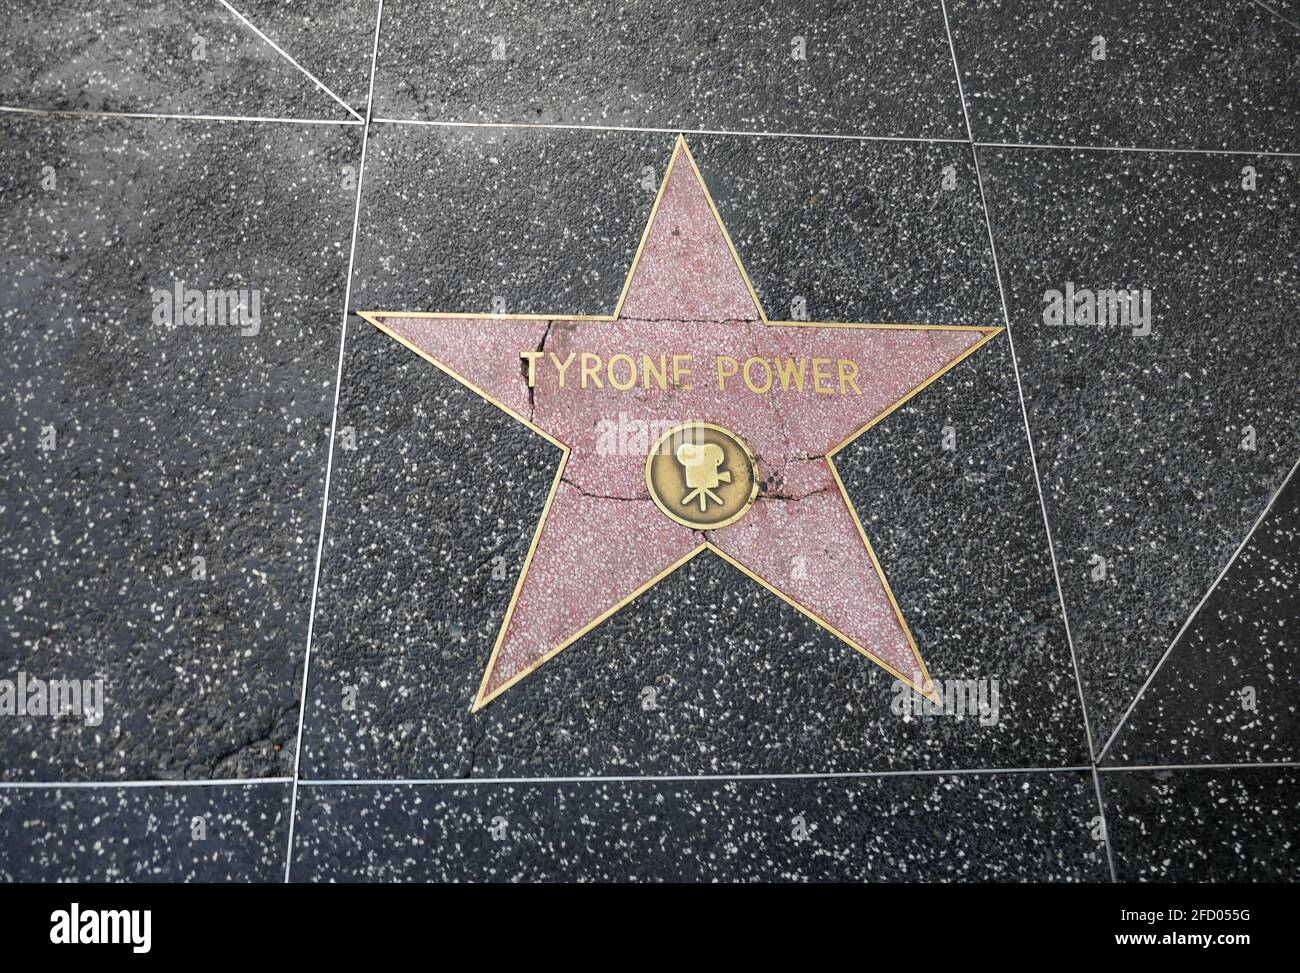 Hollywood, Kalifornien, USA 17. April 2021 EIN allgemeiner Blick auf die Atmosphäre des Schauspielers Tyrone Power's Star auf dem Hollywood Walk of Fame am 17. April 2021 in Hollywood, Kalifornien, USA. Foto von Barry King/Alamy Stockfoto Stockfoto